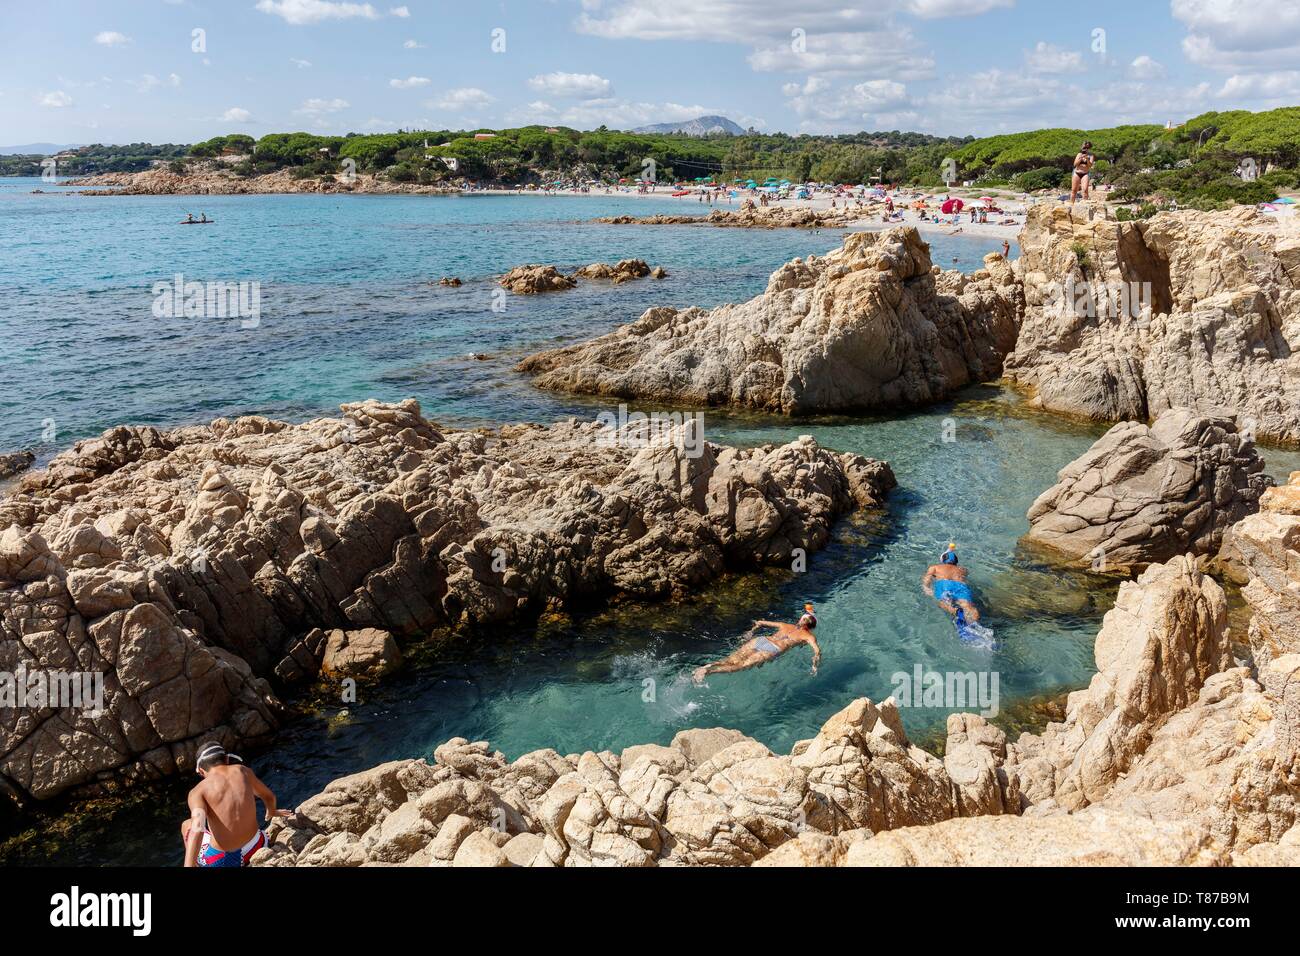 Italy, Sardinia, Nuoro Province, Orosei, Cala Liberotto, couple snorkeling Stock Photo